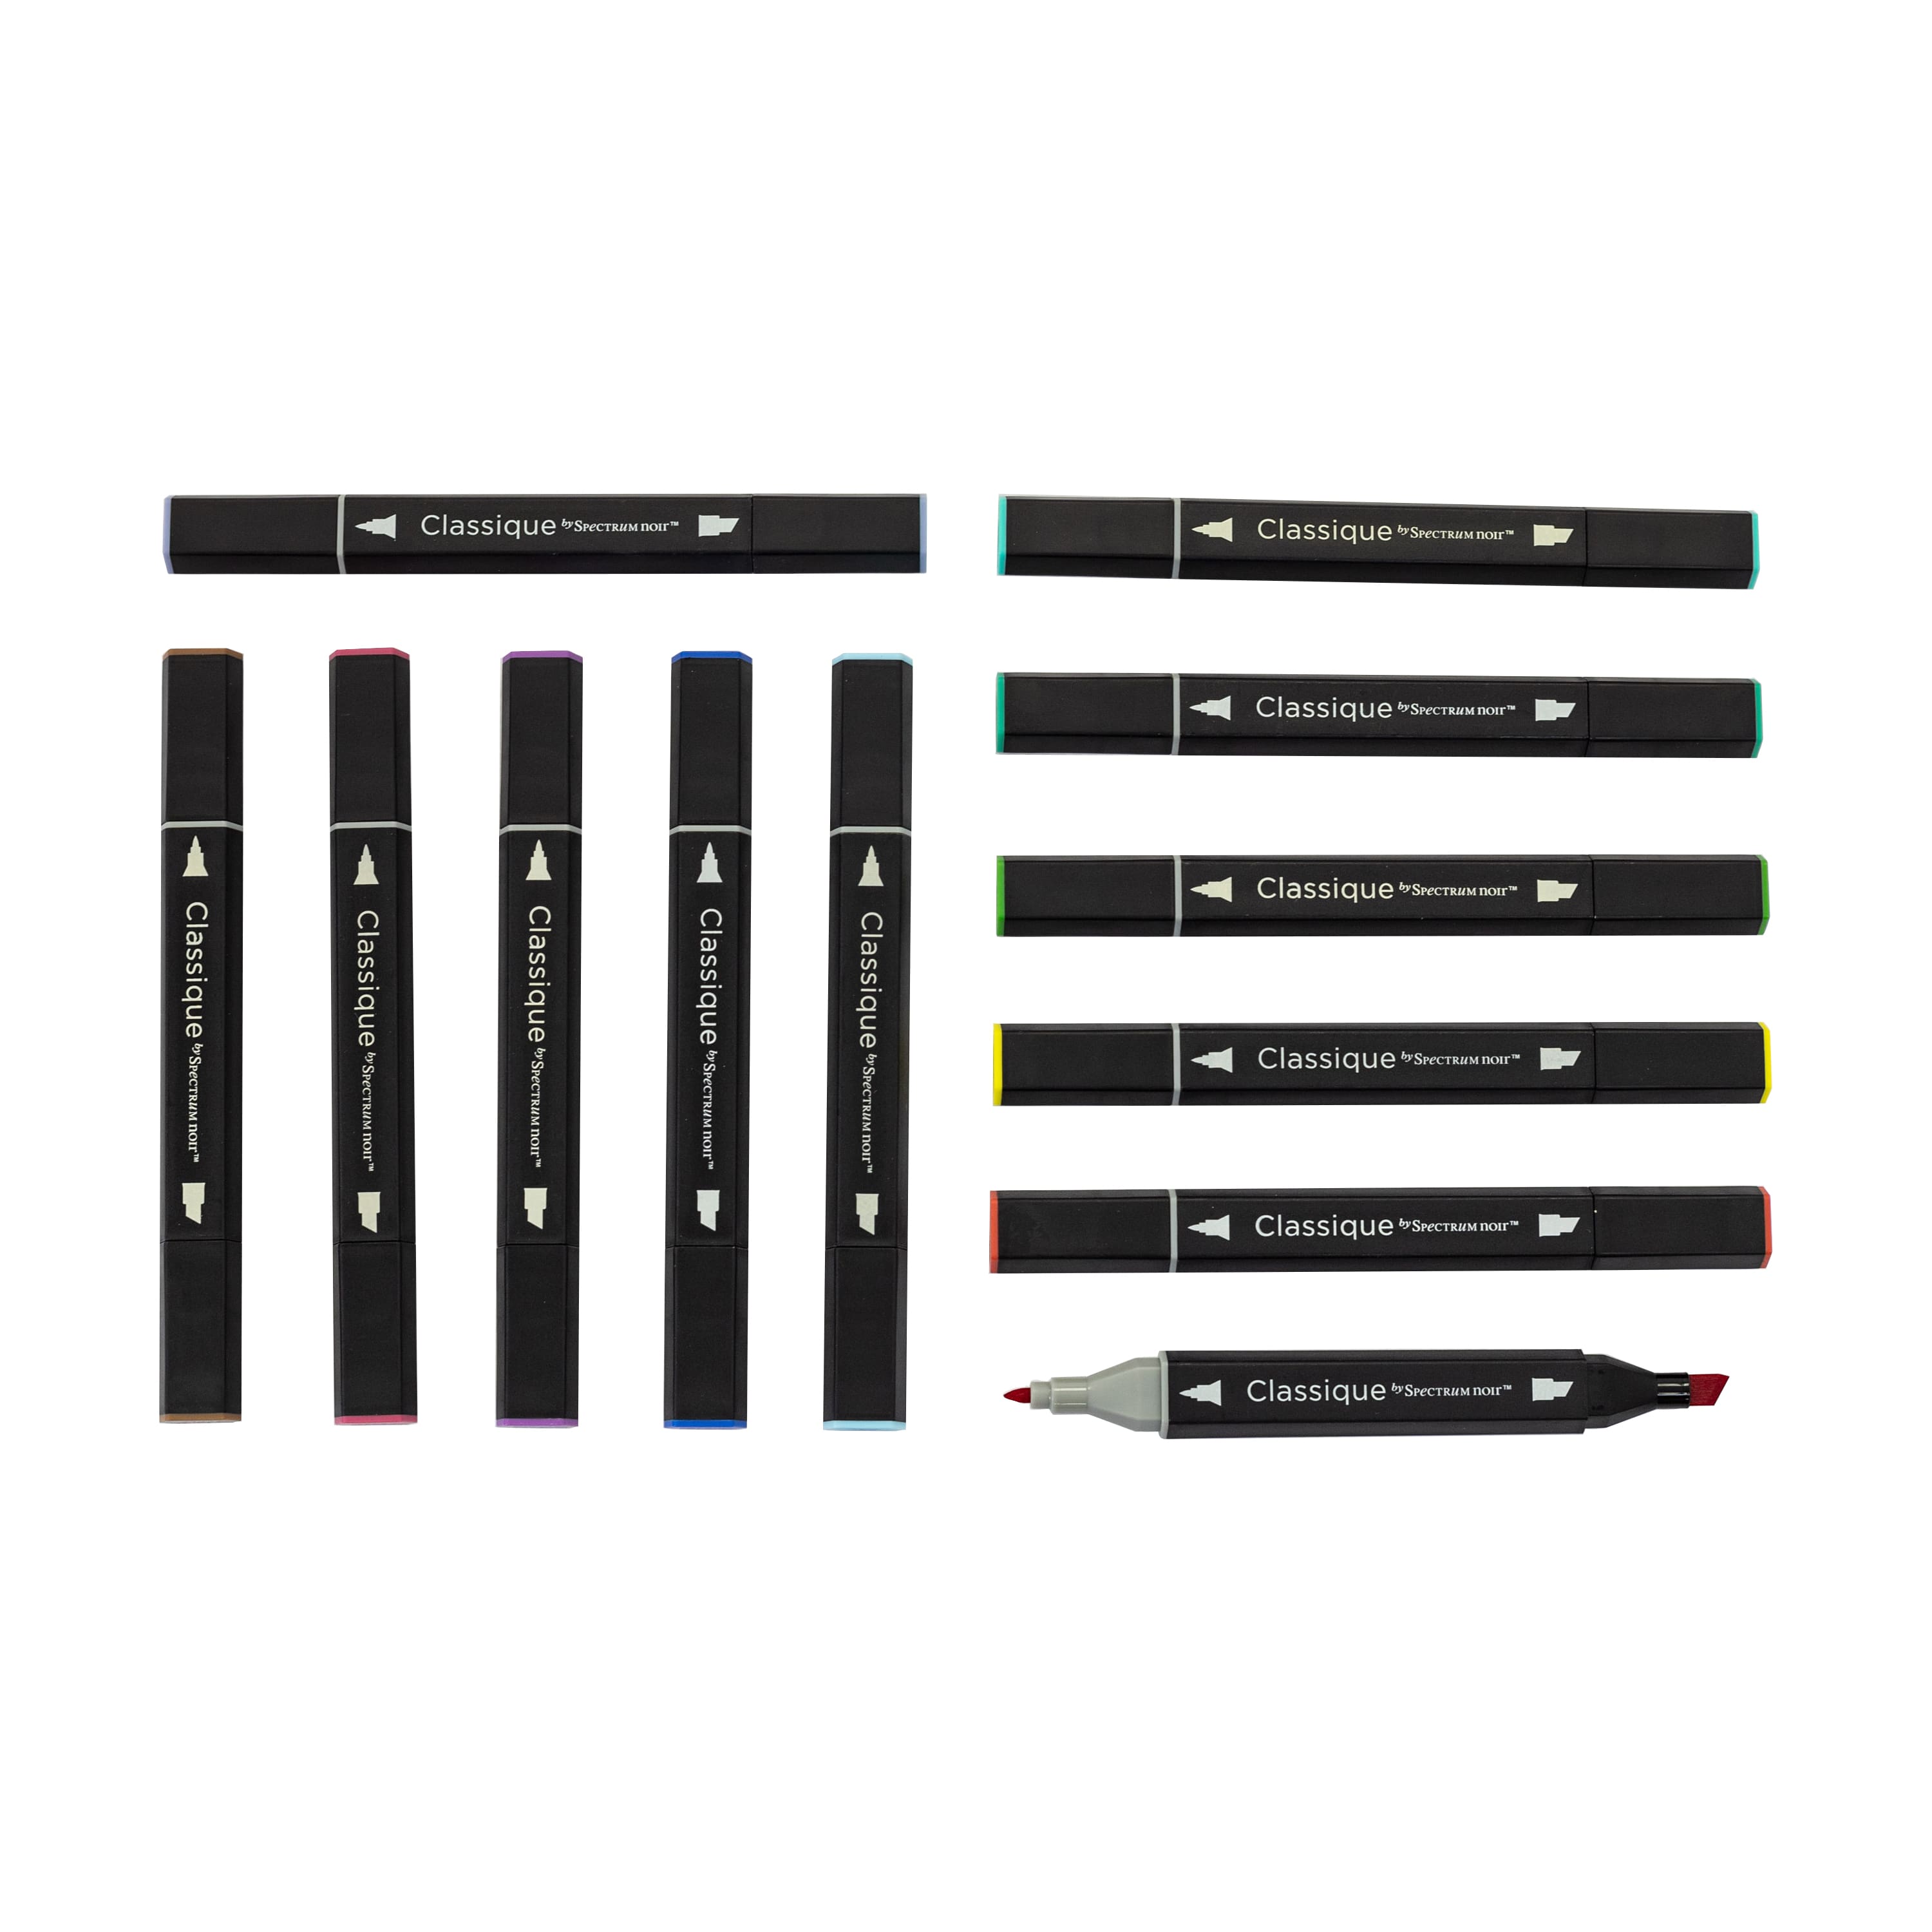 Spectrum Noir™ Classique Design Dual Tip Marker Set